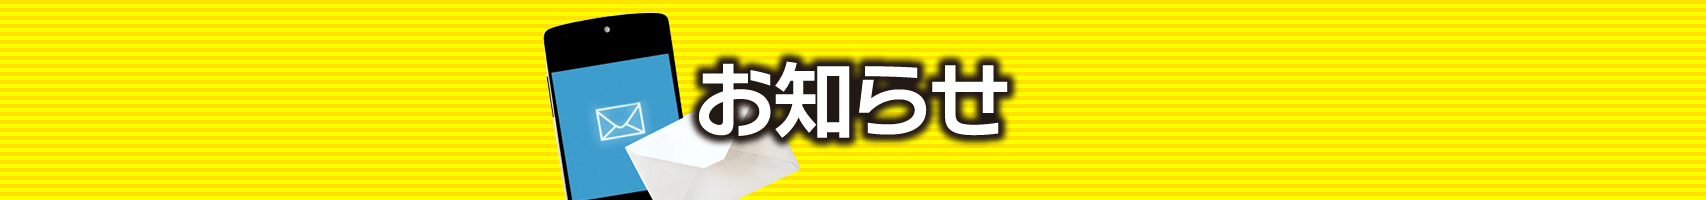 亀谷競馬サロン 本日20時時点の更新コンテンツ/12月10日(金)